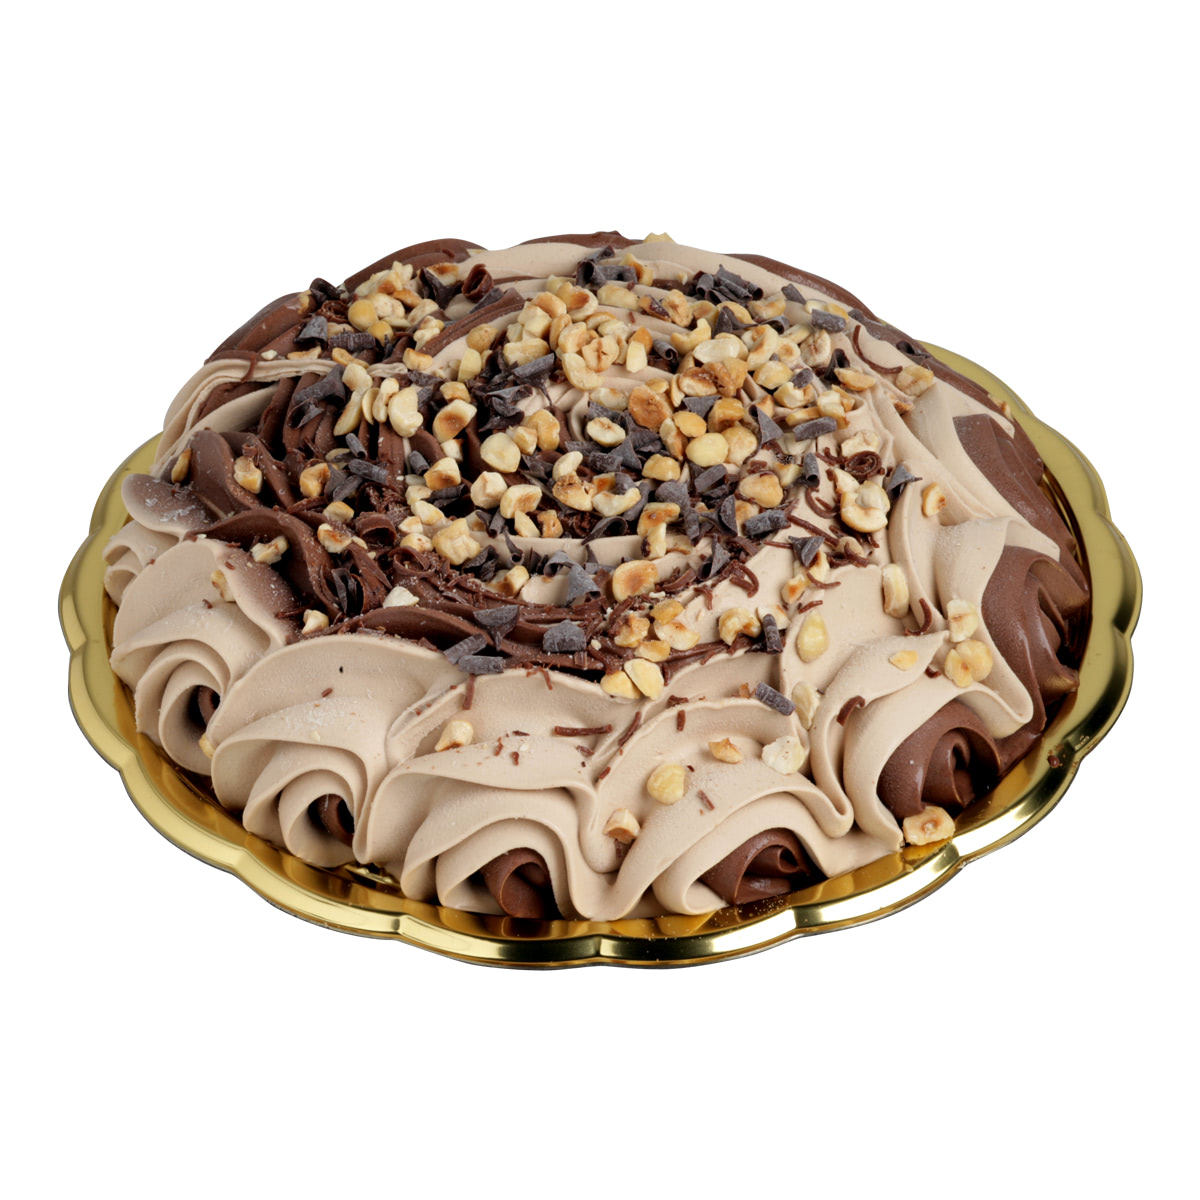 torta cioccolato e nocciola - Gallo gelati - gelato artigianale siciliano